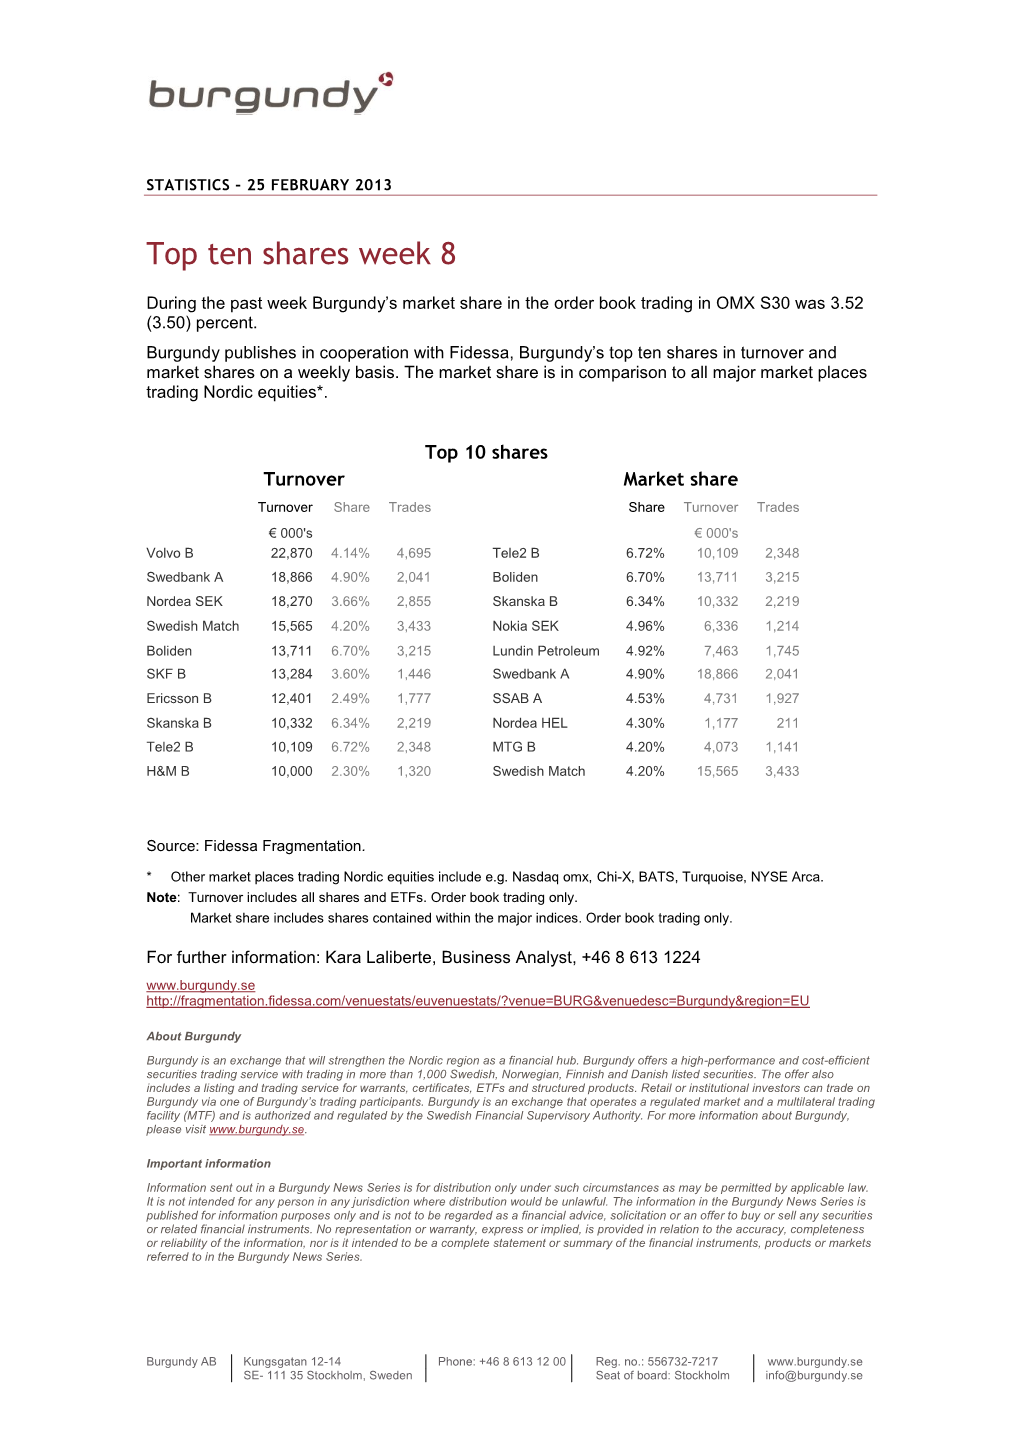 Top Ten Shares Week 8